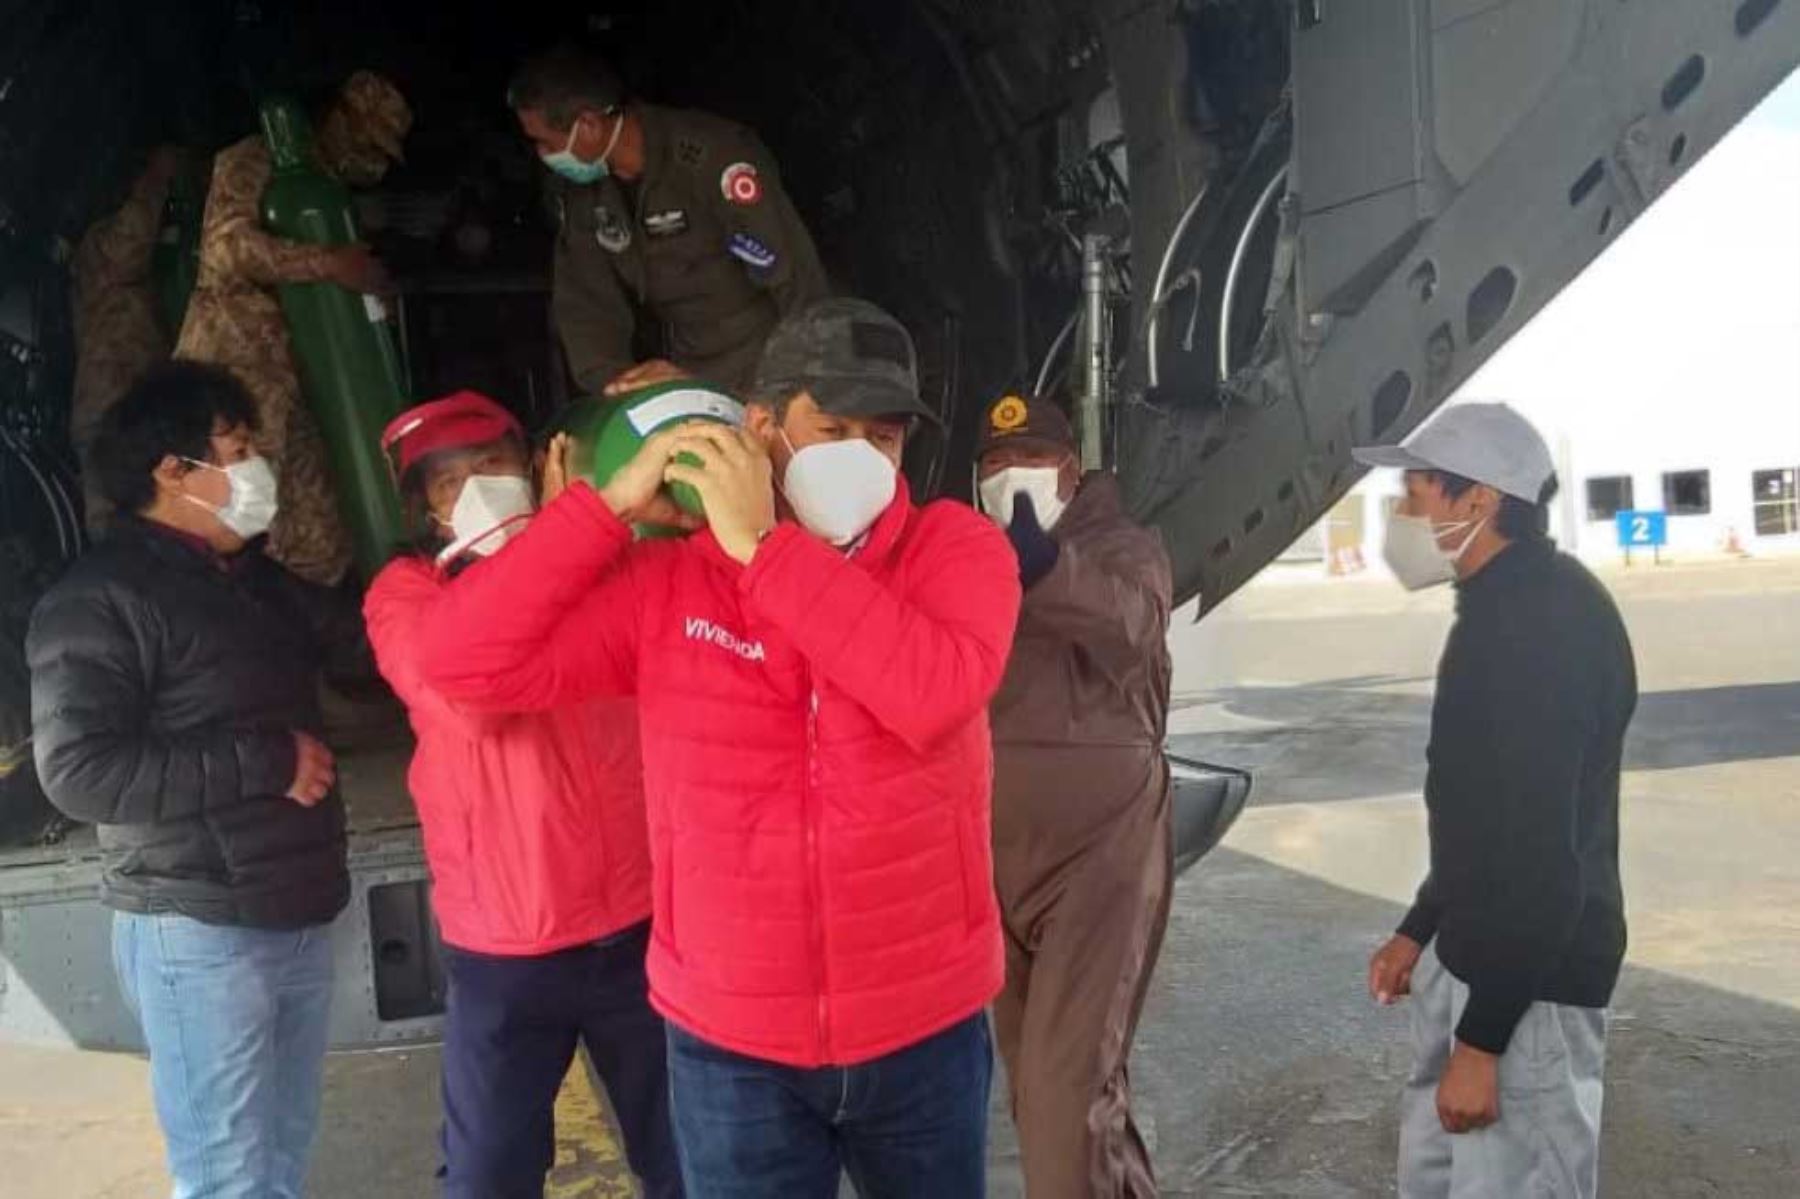 El ministro de Vivienda, Carlos Lozada, se reúne con el alcalde de San Román en el aeropuerto de Juliaca, en Puno. Provincia será una de las beneficiadas con los 100 tanques de oxígeno que llegan a la región esta mañana en un trabajo conjunto con la Fuerza Aérea del Peru. Foto: ANDINA/Ministerio de Vivienda